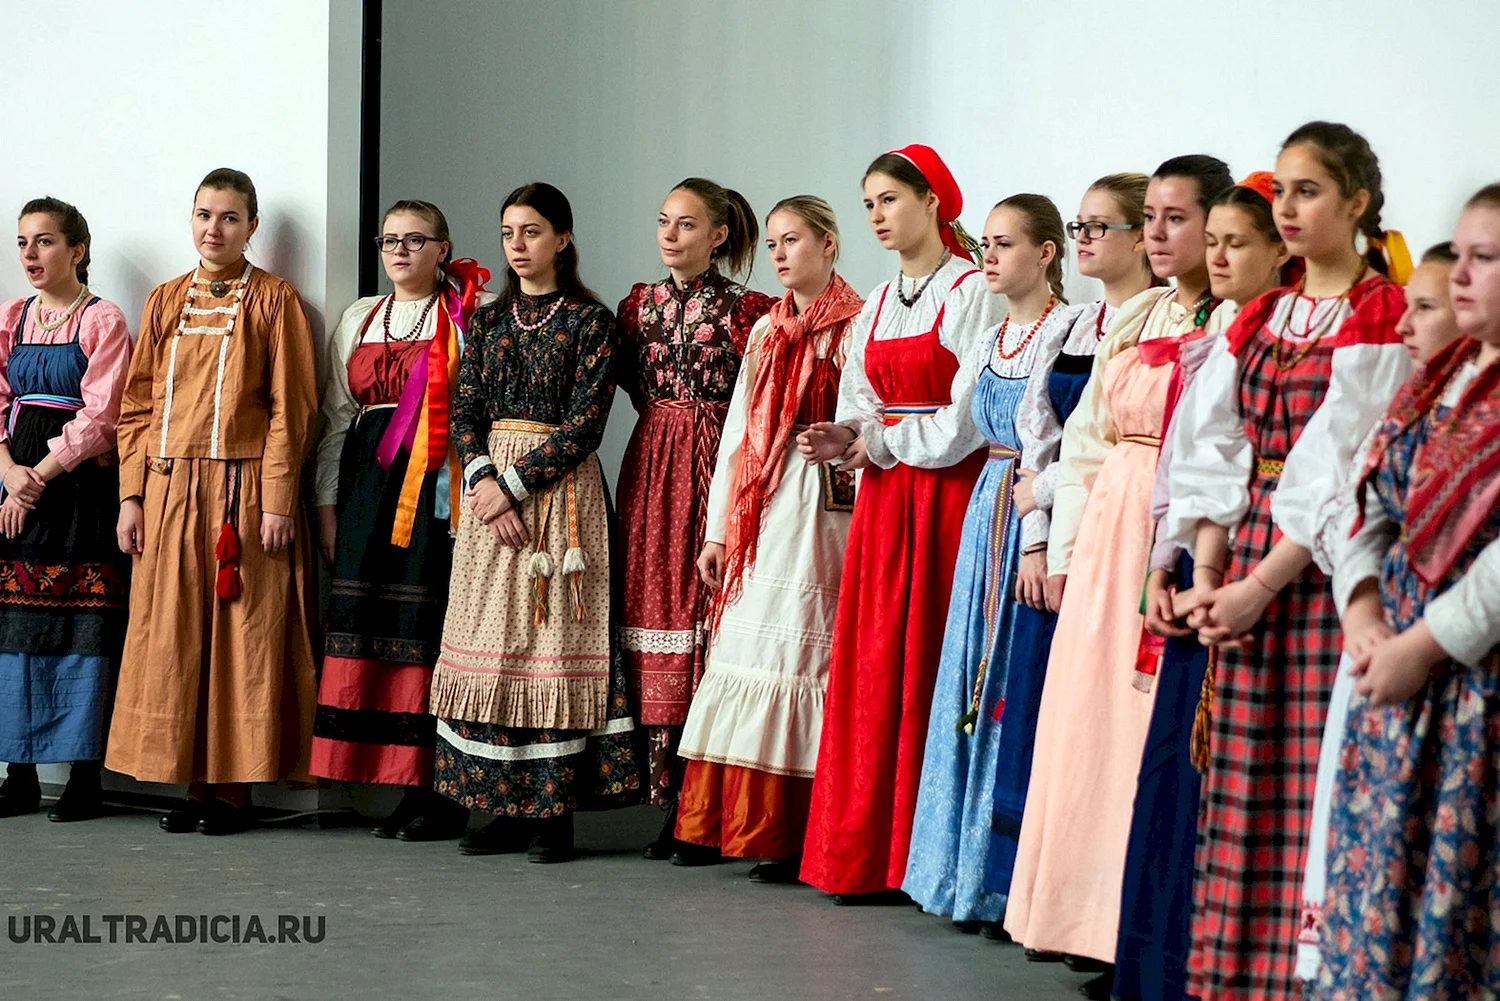 Центр традиционной народной культуры среднего Урала